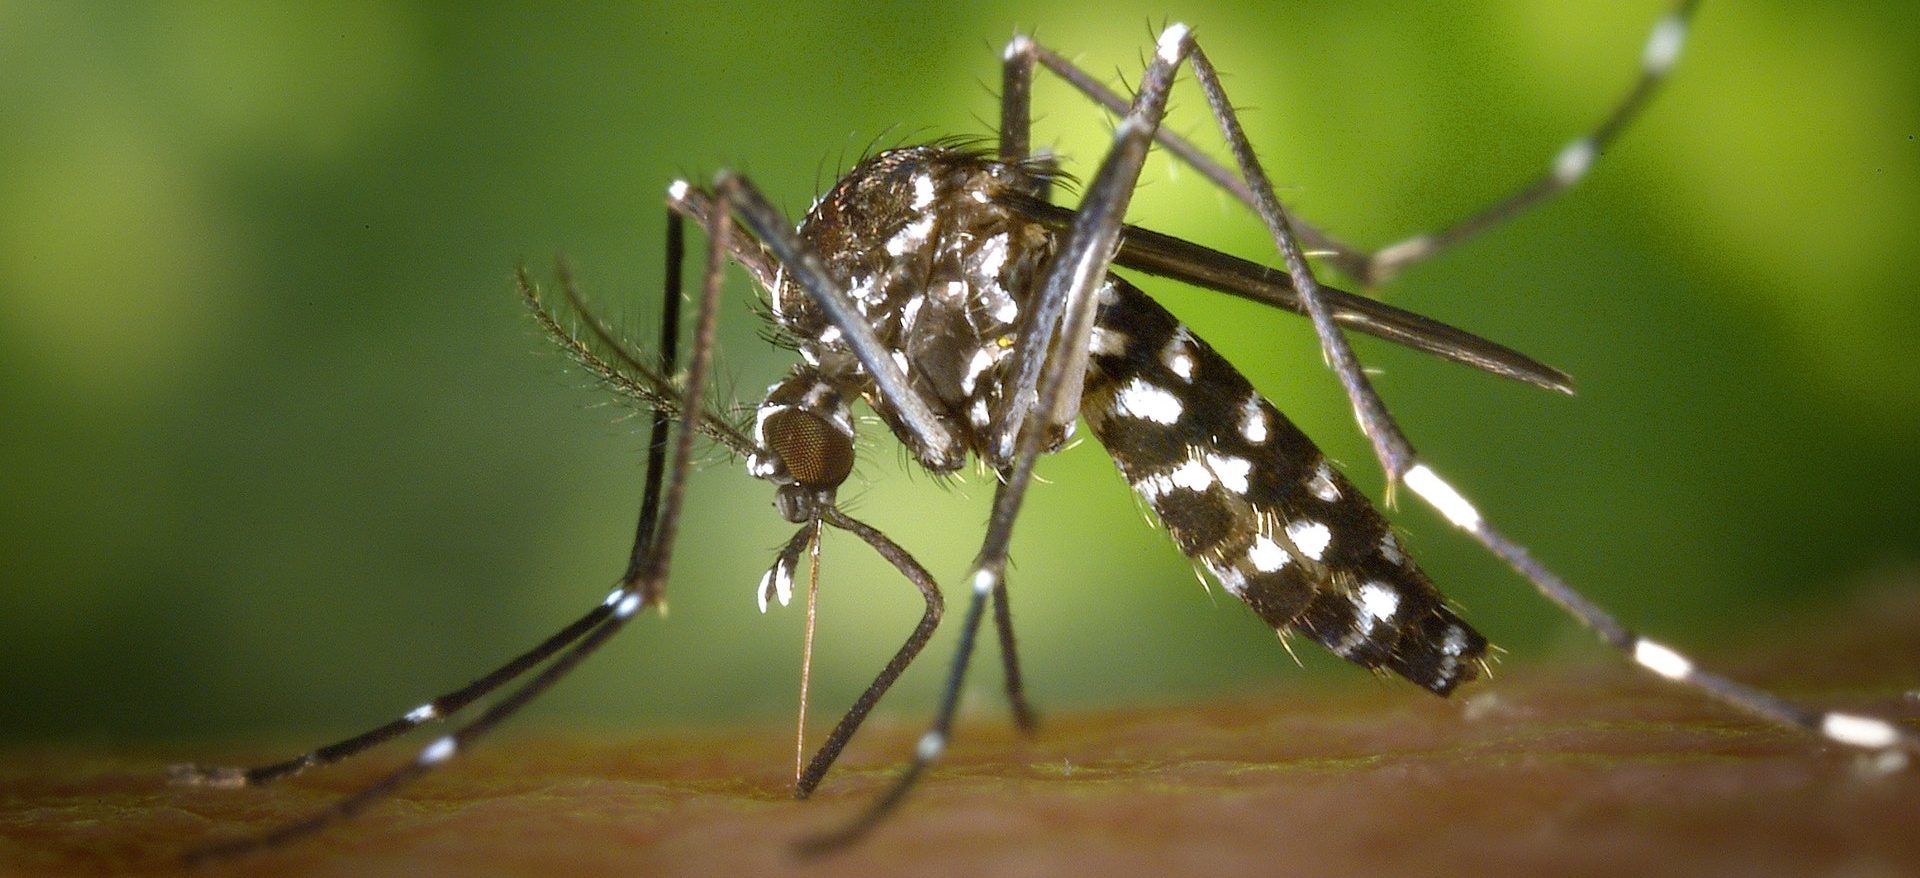 Malaria death rates drop by 60%